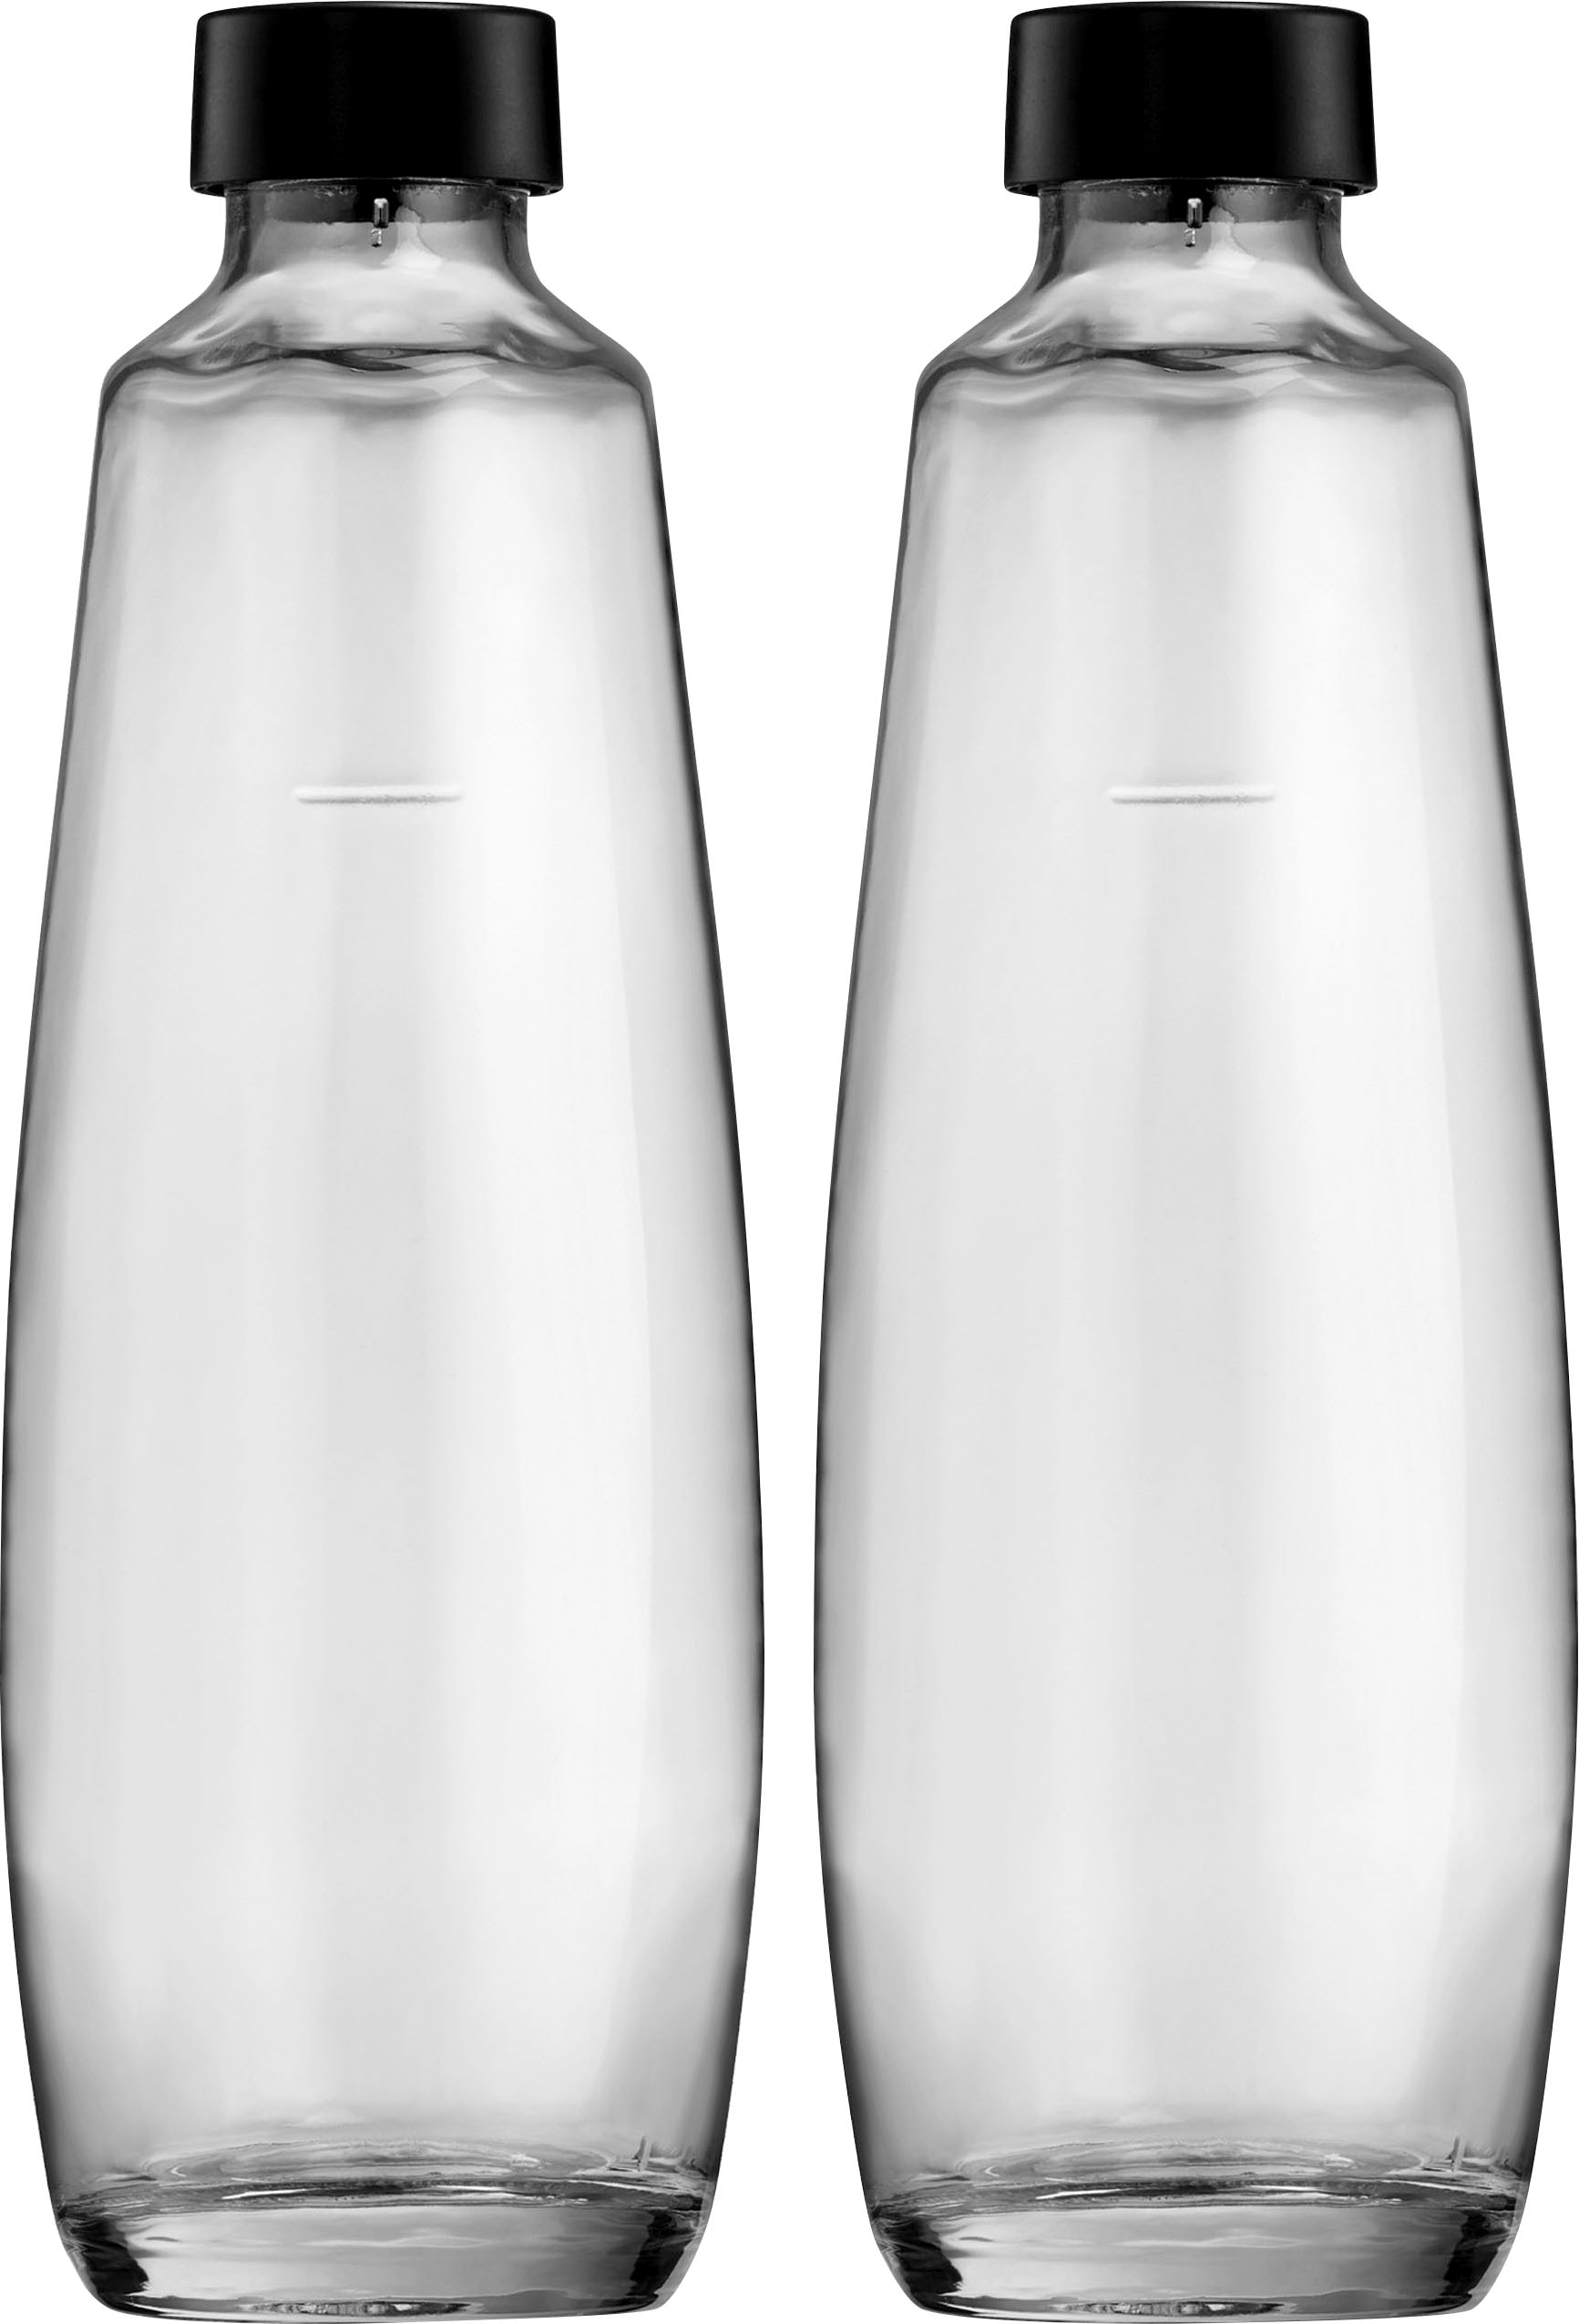 SodaStream Wassersprudler Flasche »DuoPack«, (Set, 2 tlg.), 1L Glasflache, Ersatzflaschen Für SodaStream DUO, 2x 1L